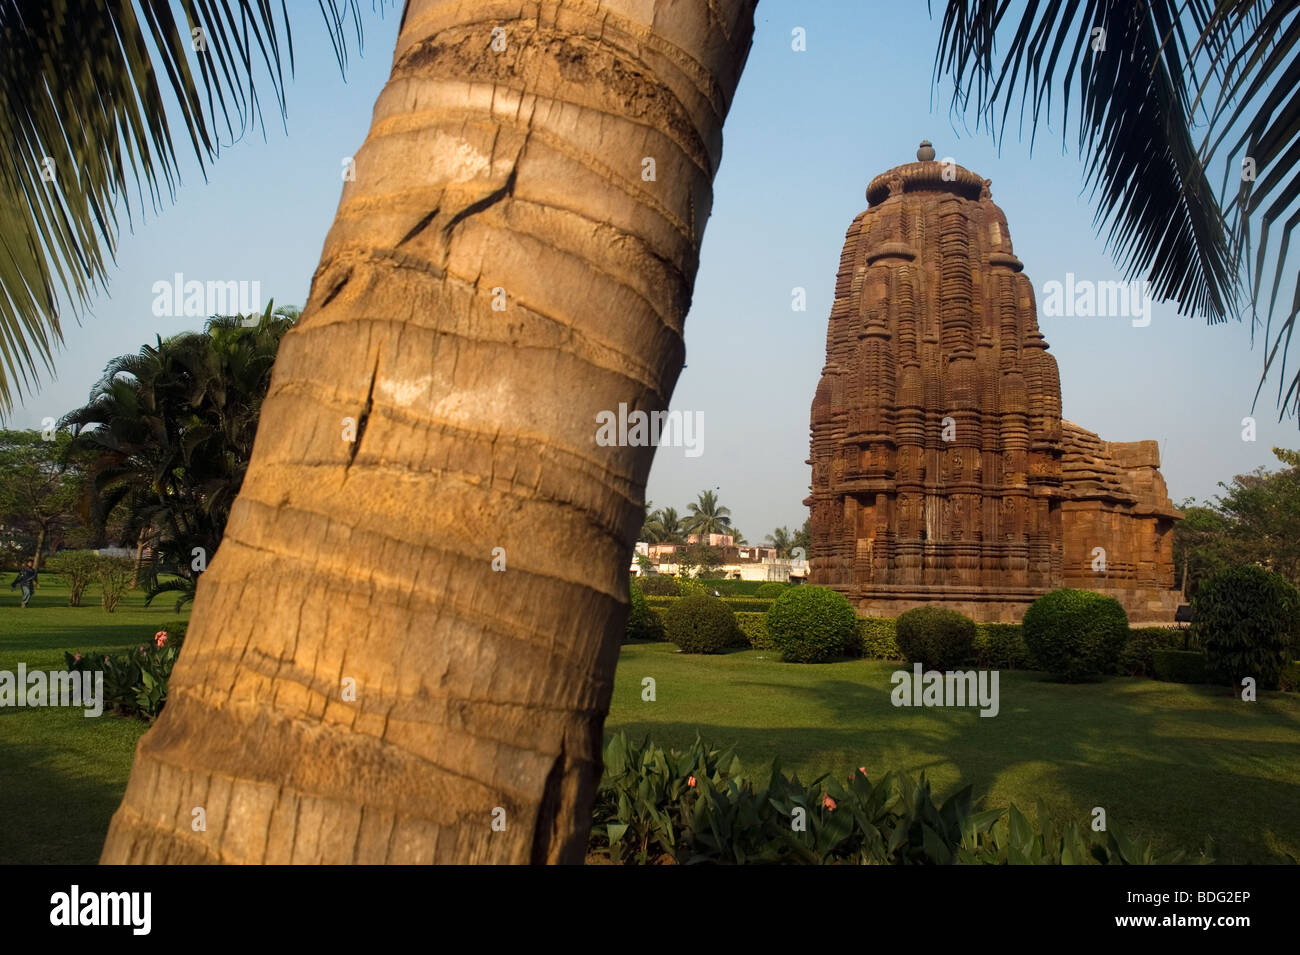 Rajarani Tempel, Bhubaneswar, Orissa, Indien. Stockfoto